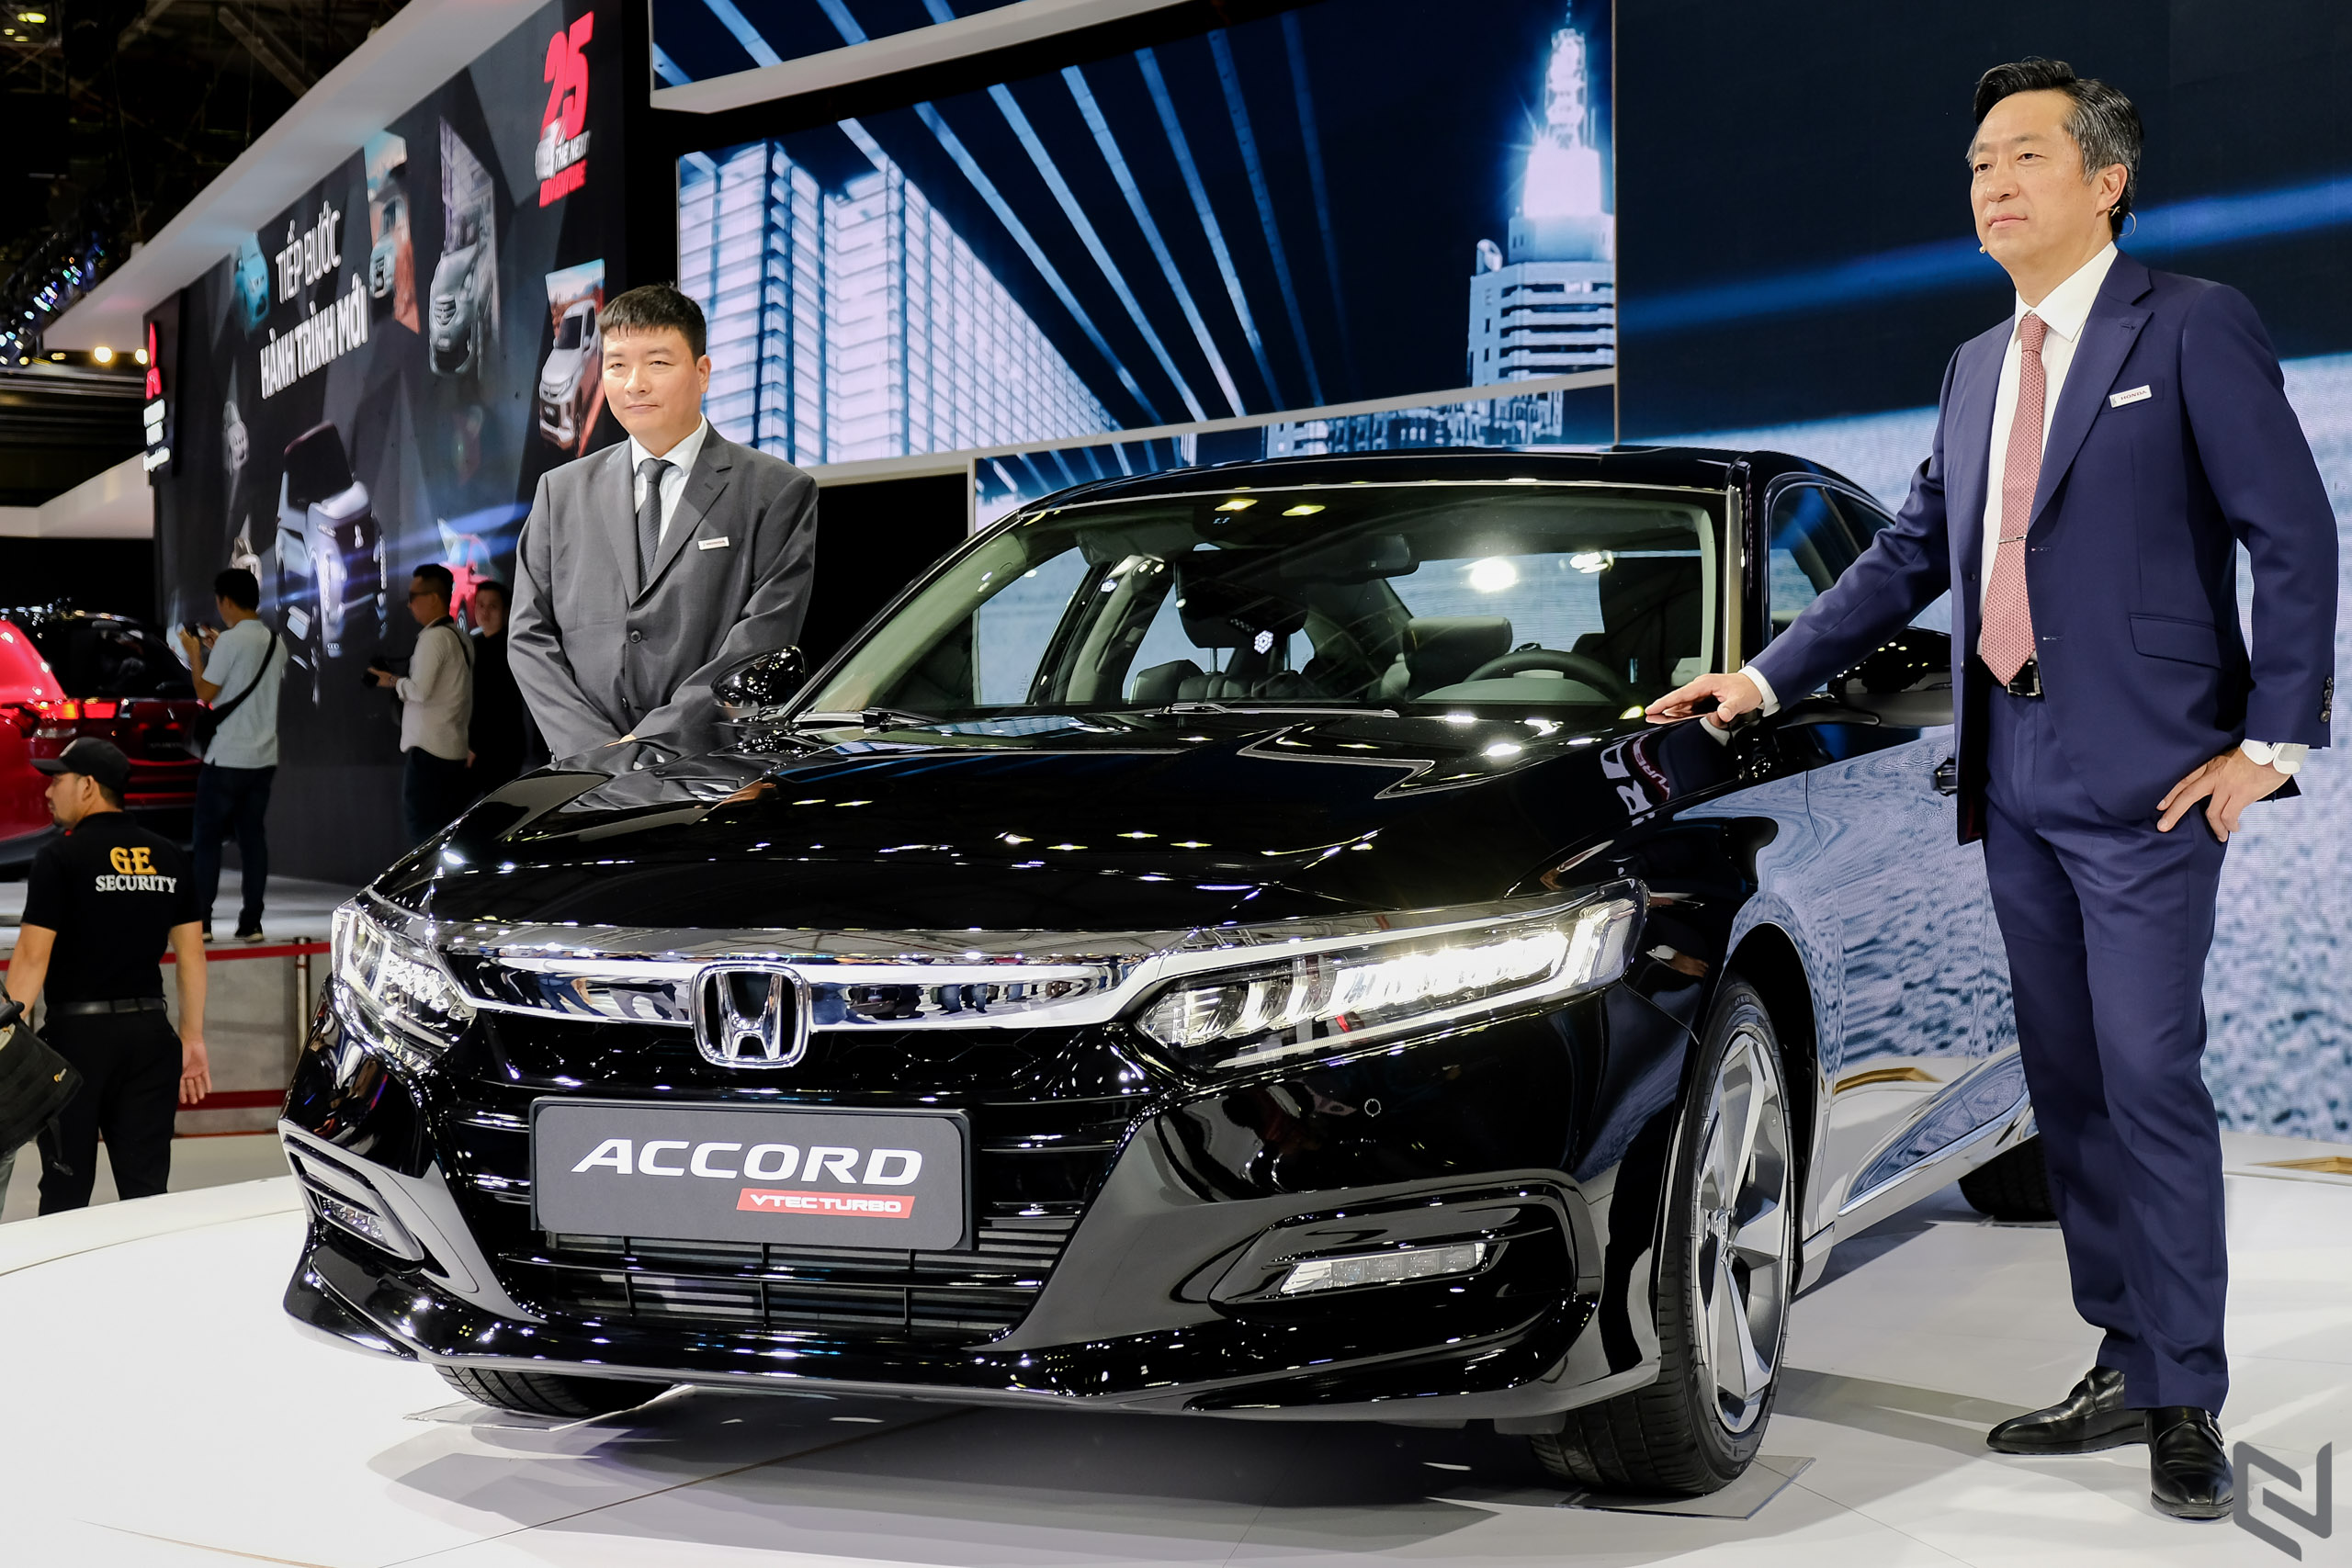 Dạo quanh gian hàng “Tăng tốc cùng Ước mơ” của Honda với Accord 2019, CR-V, HR-V,...